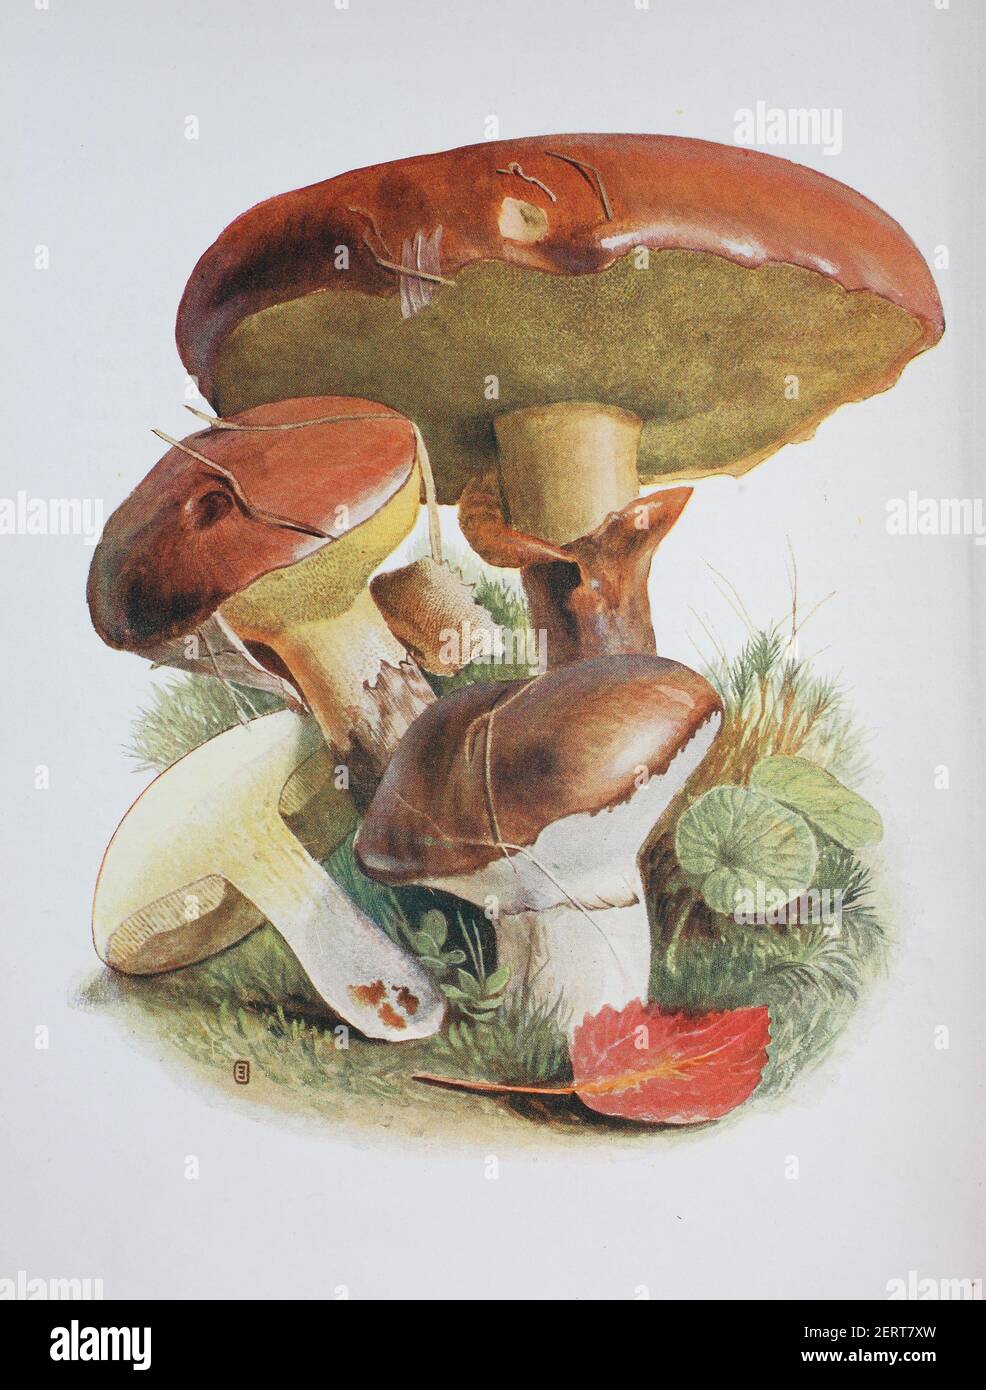 Suillus luteus est un champignon boléte et l'espèce type du genre Suillus. Un champignon commun originaire d'Eurasie, des îles britanniques à la Corée, il a été largement introduit ailleurs, y compris en Amérique du Nord et du Sud, en Afrique australe, en Australie et en Nouvelle-Zélande. Communément appelé « cric glissant » ou « pain collant » dans les pays anglophones, reproduction numérique d'une illustration d'Emil Doerstling (1859-1940) Banque D'Images